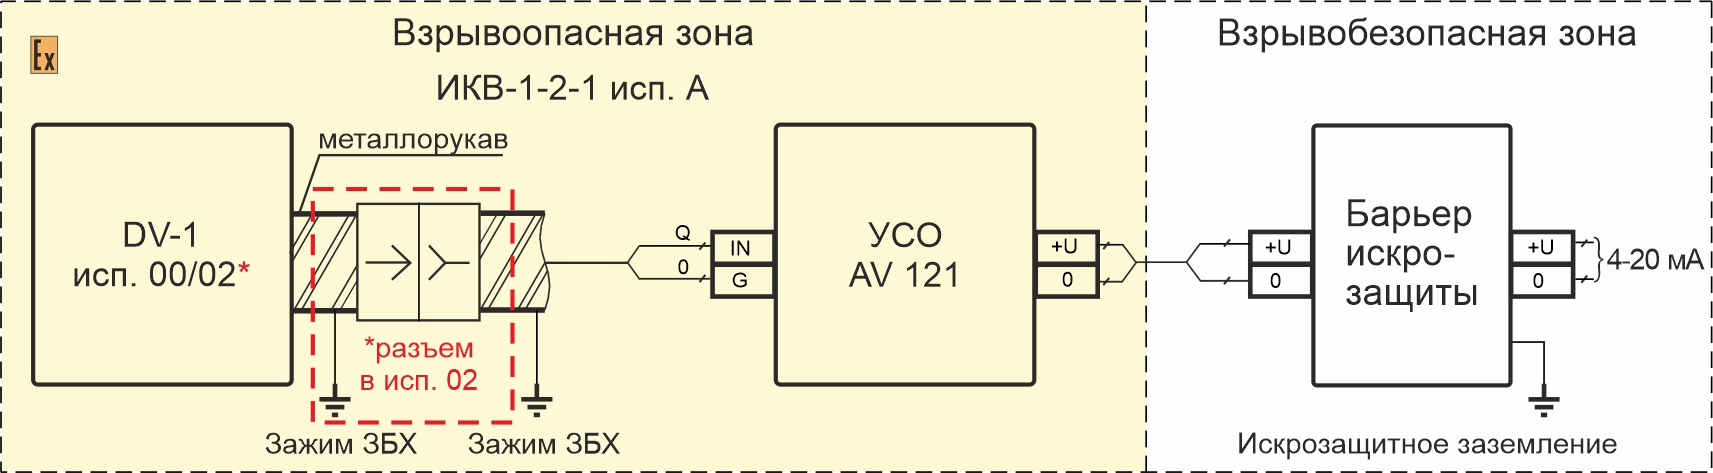 Схемы подключения вибропреобразователей DV-1